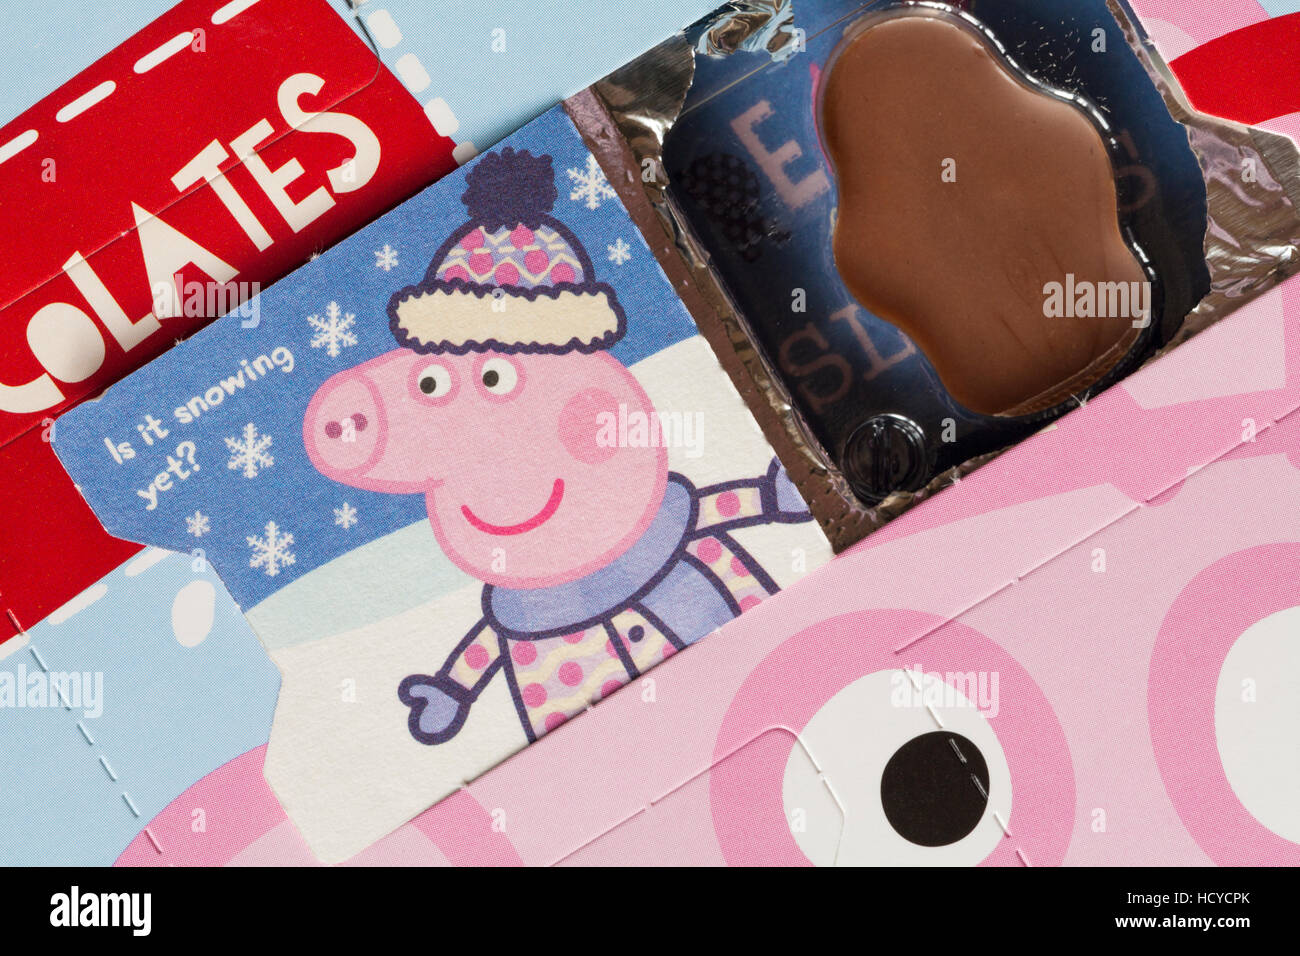 Detail of Kinnerton milk chocolate Peppa Pig advent calendar showing open door - is it snowing yet Stock Photo